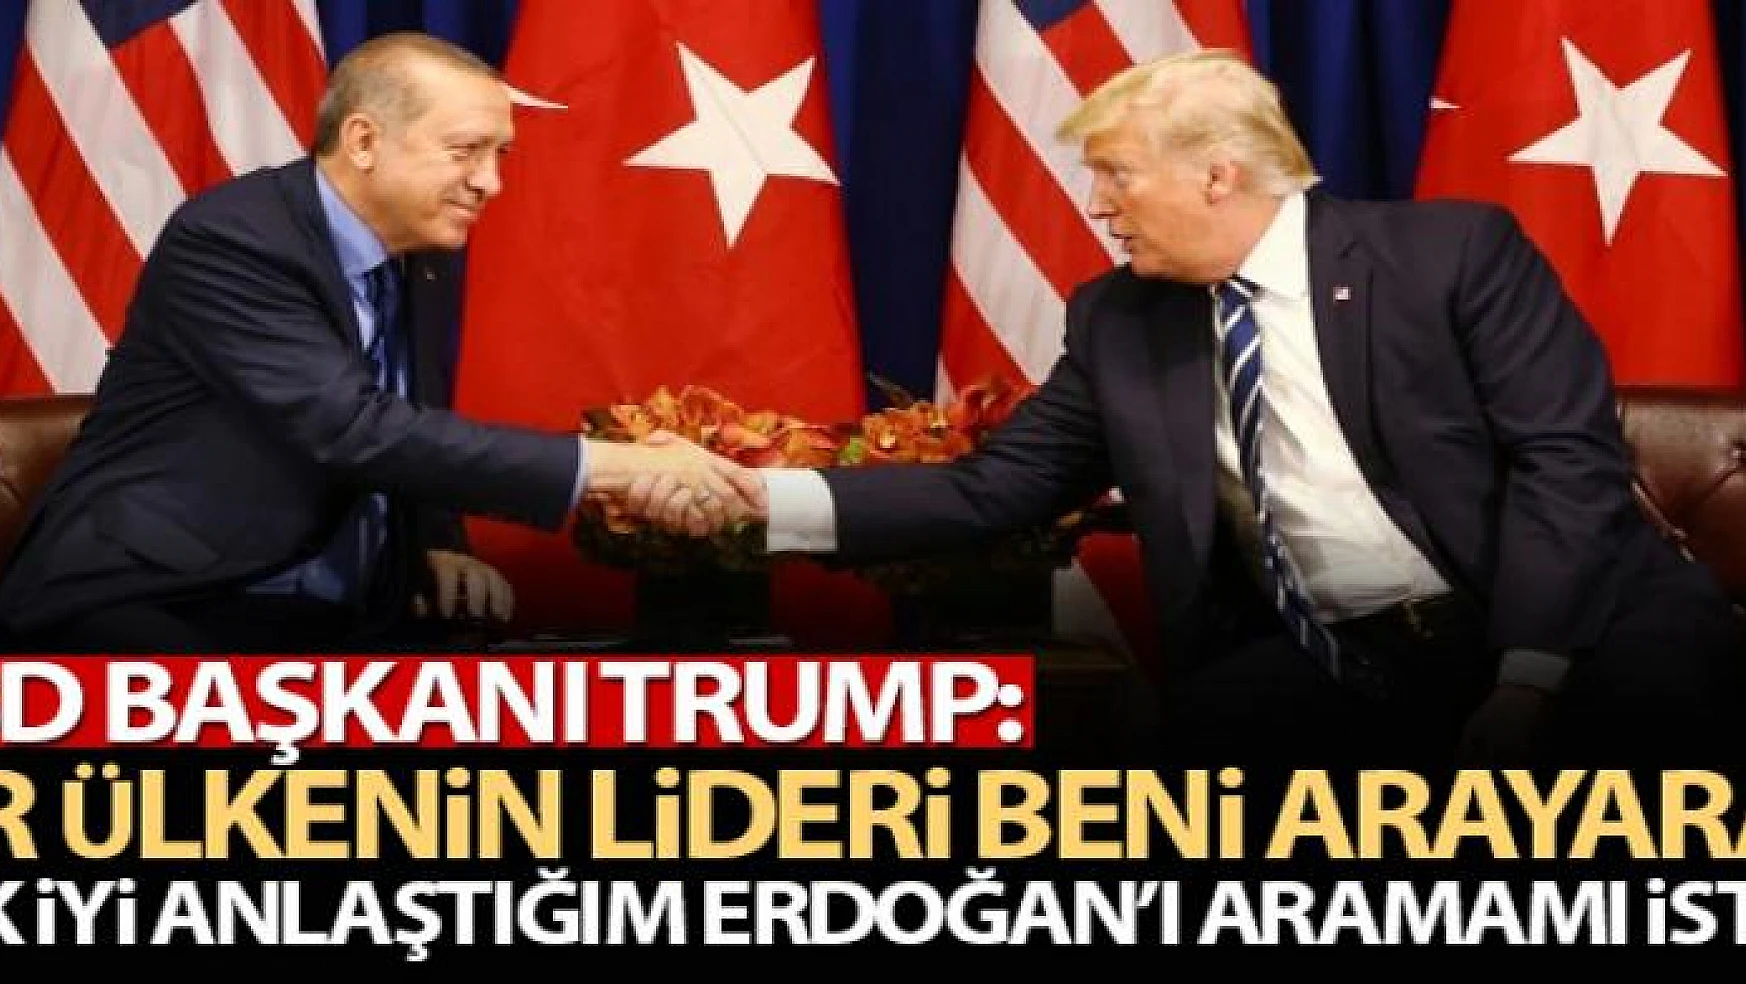 Trump: 'Bir ülkenin lideri beni arayarak, çok iyi anlaştığım Erdoğan'ı aramamı istedi'